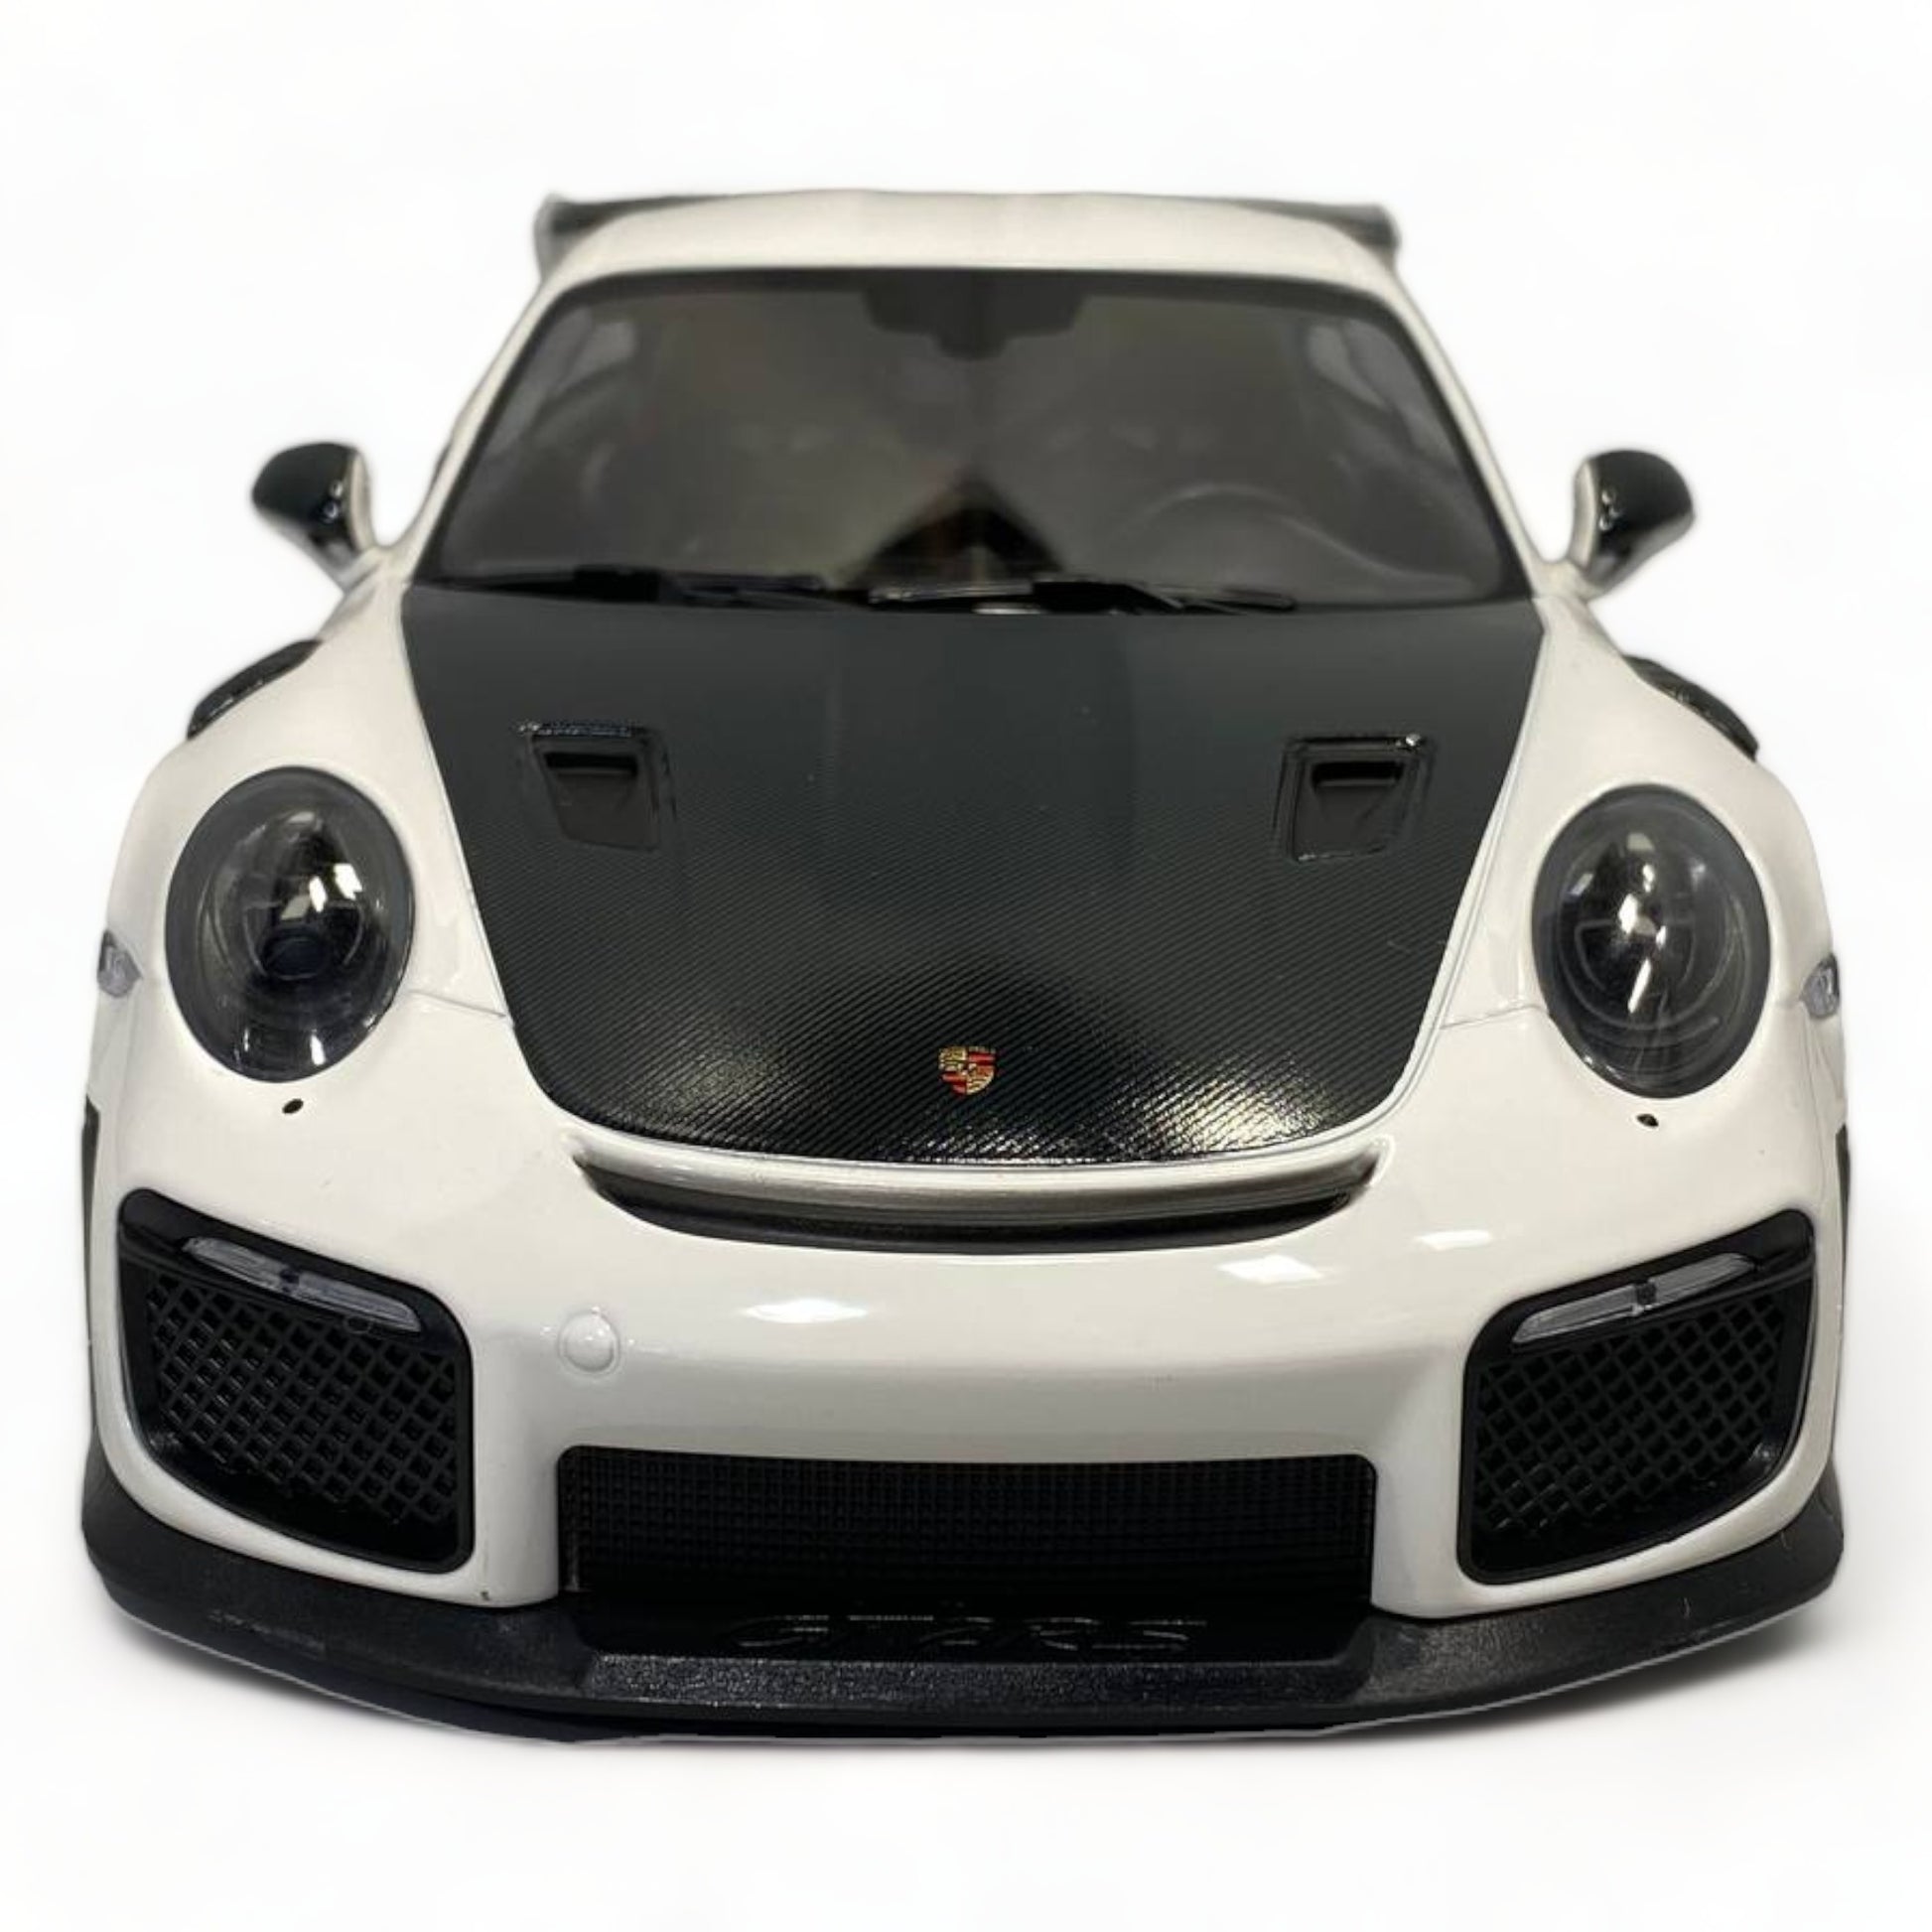 1/18 Minichamps Porsche 911 GT2 RS - White 2018 Model Car|Sold in Dturman.com Dubai UAE.